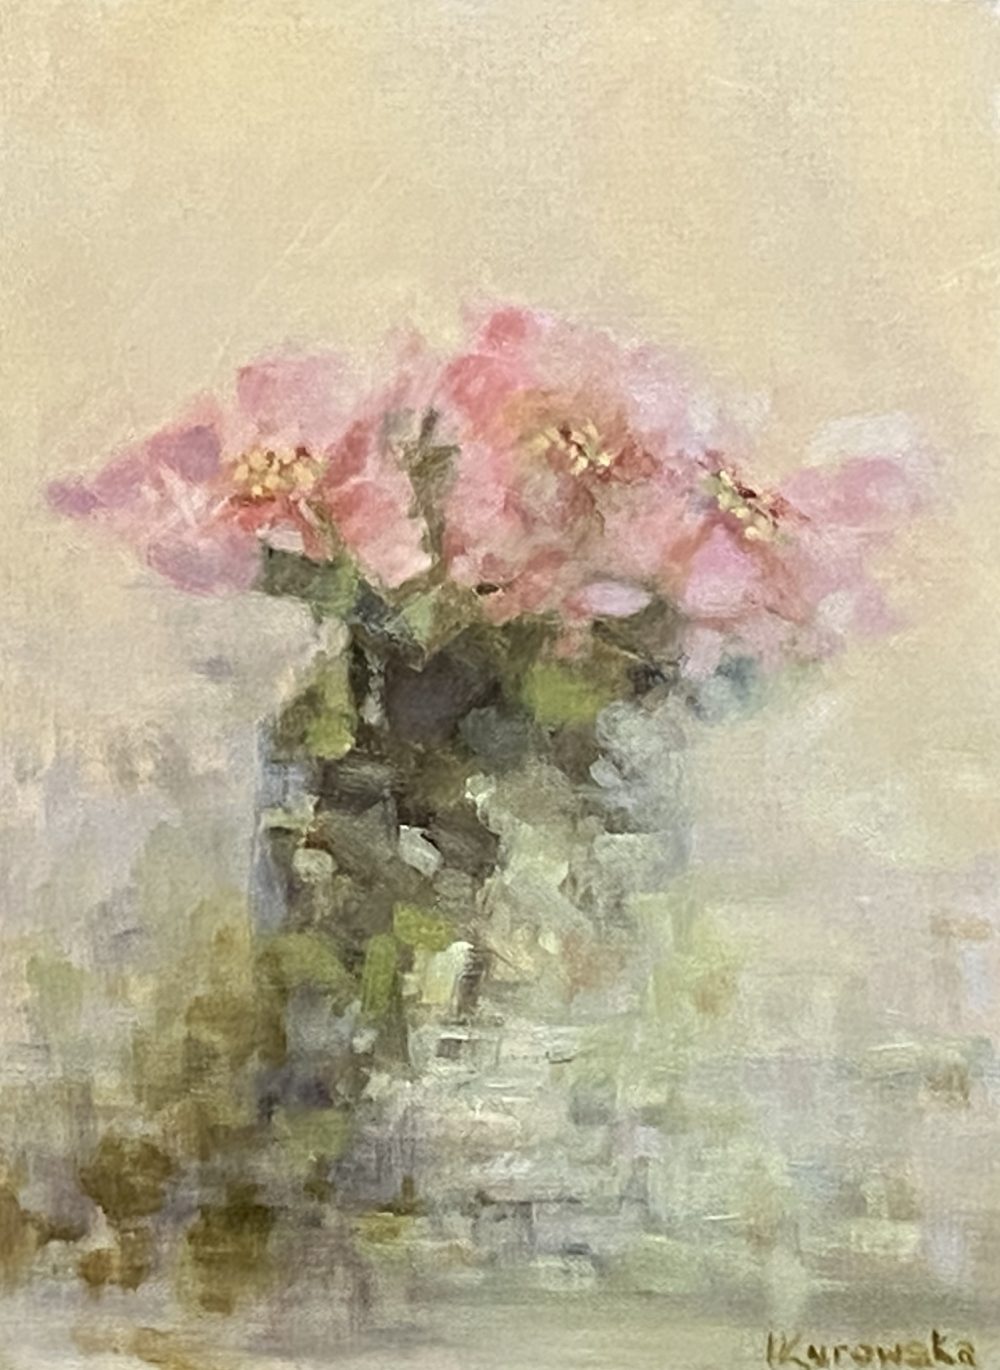 Wild Roses, oil on canvas by Irena Kurowska